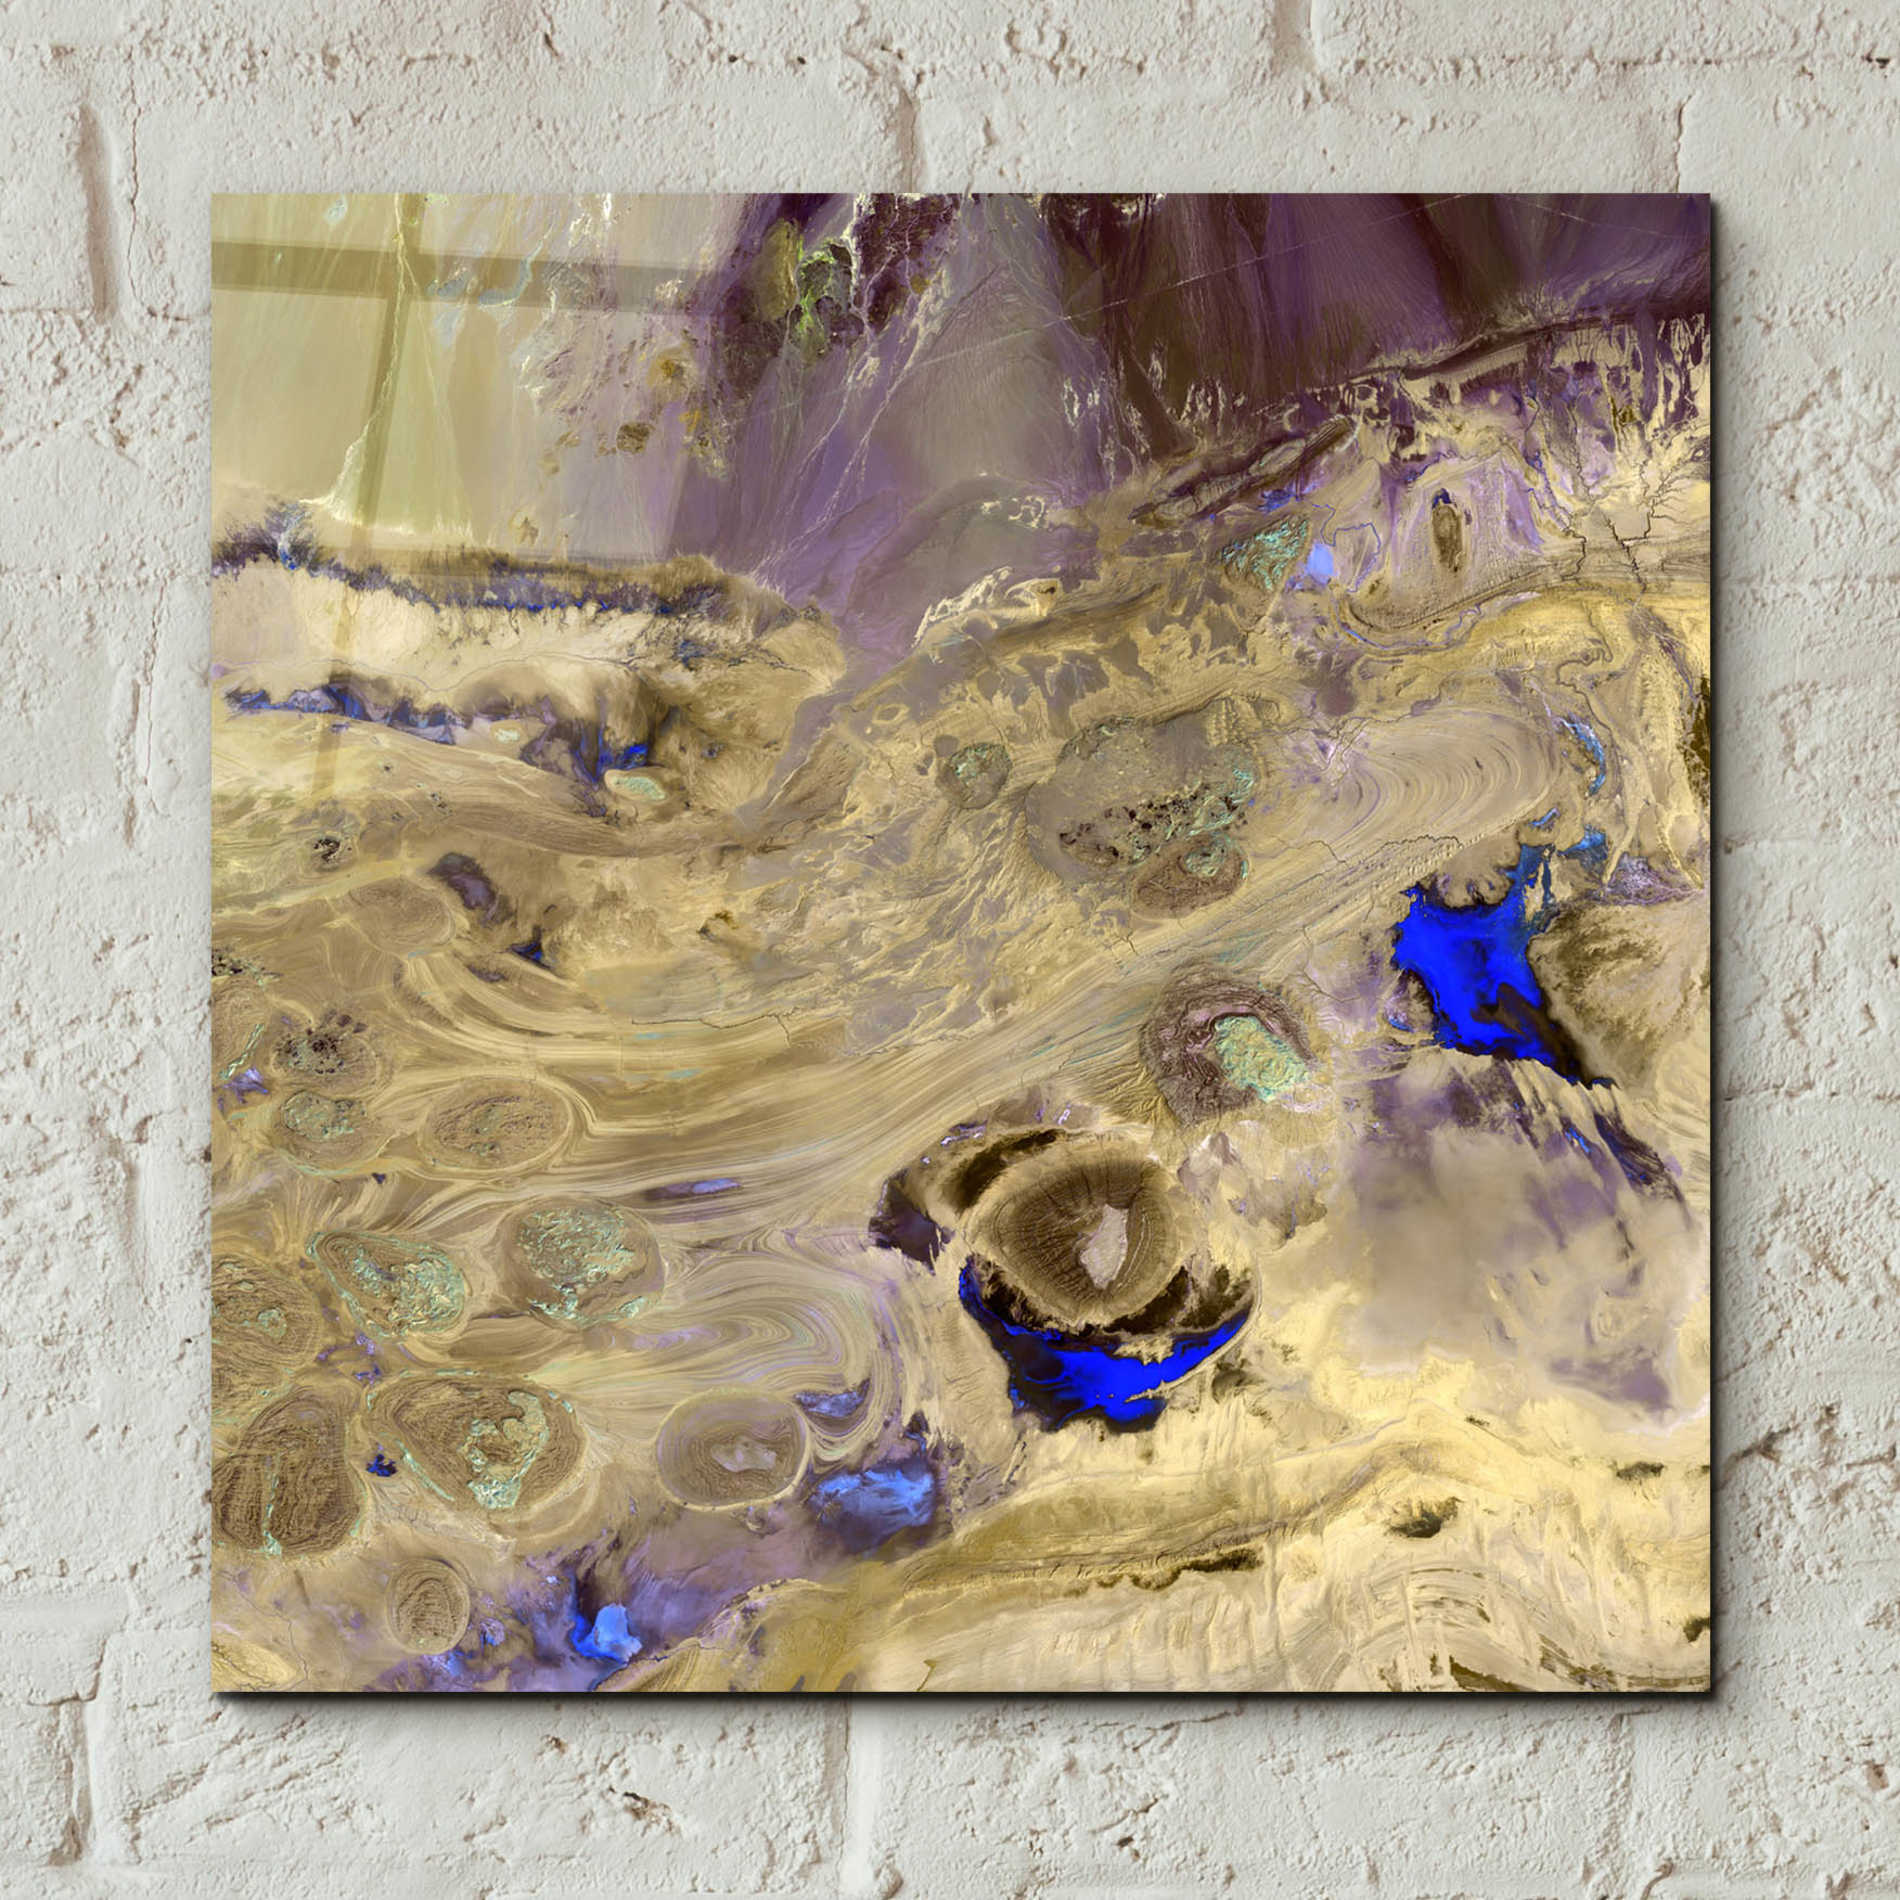 Epic Art 'Earth as Art: Great Salt Desert' Acrylic Glass Wall Art,12x12